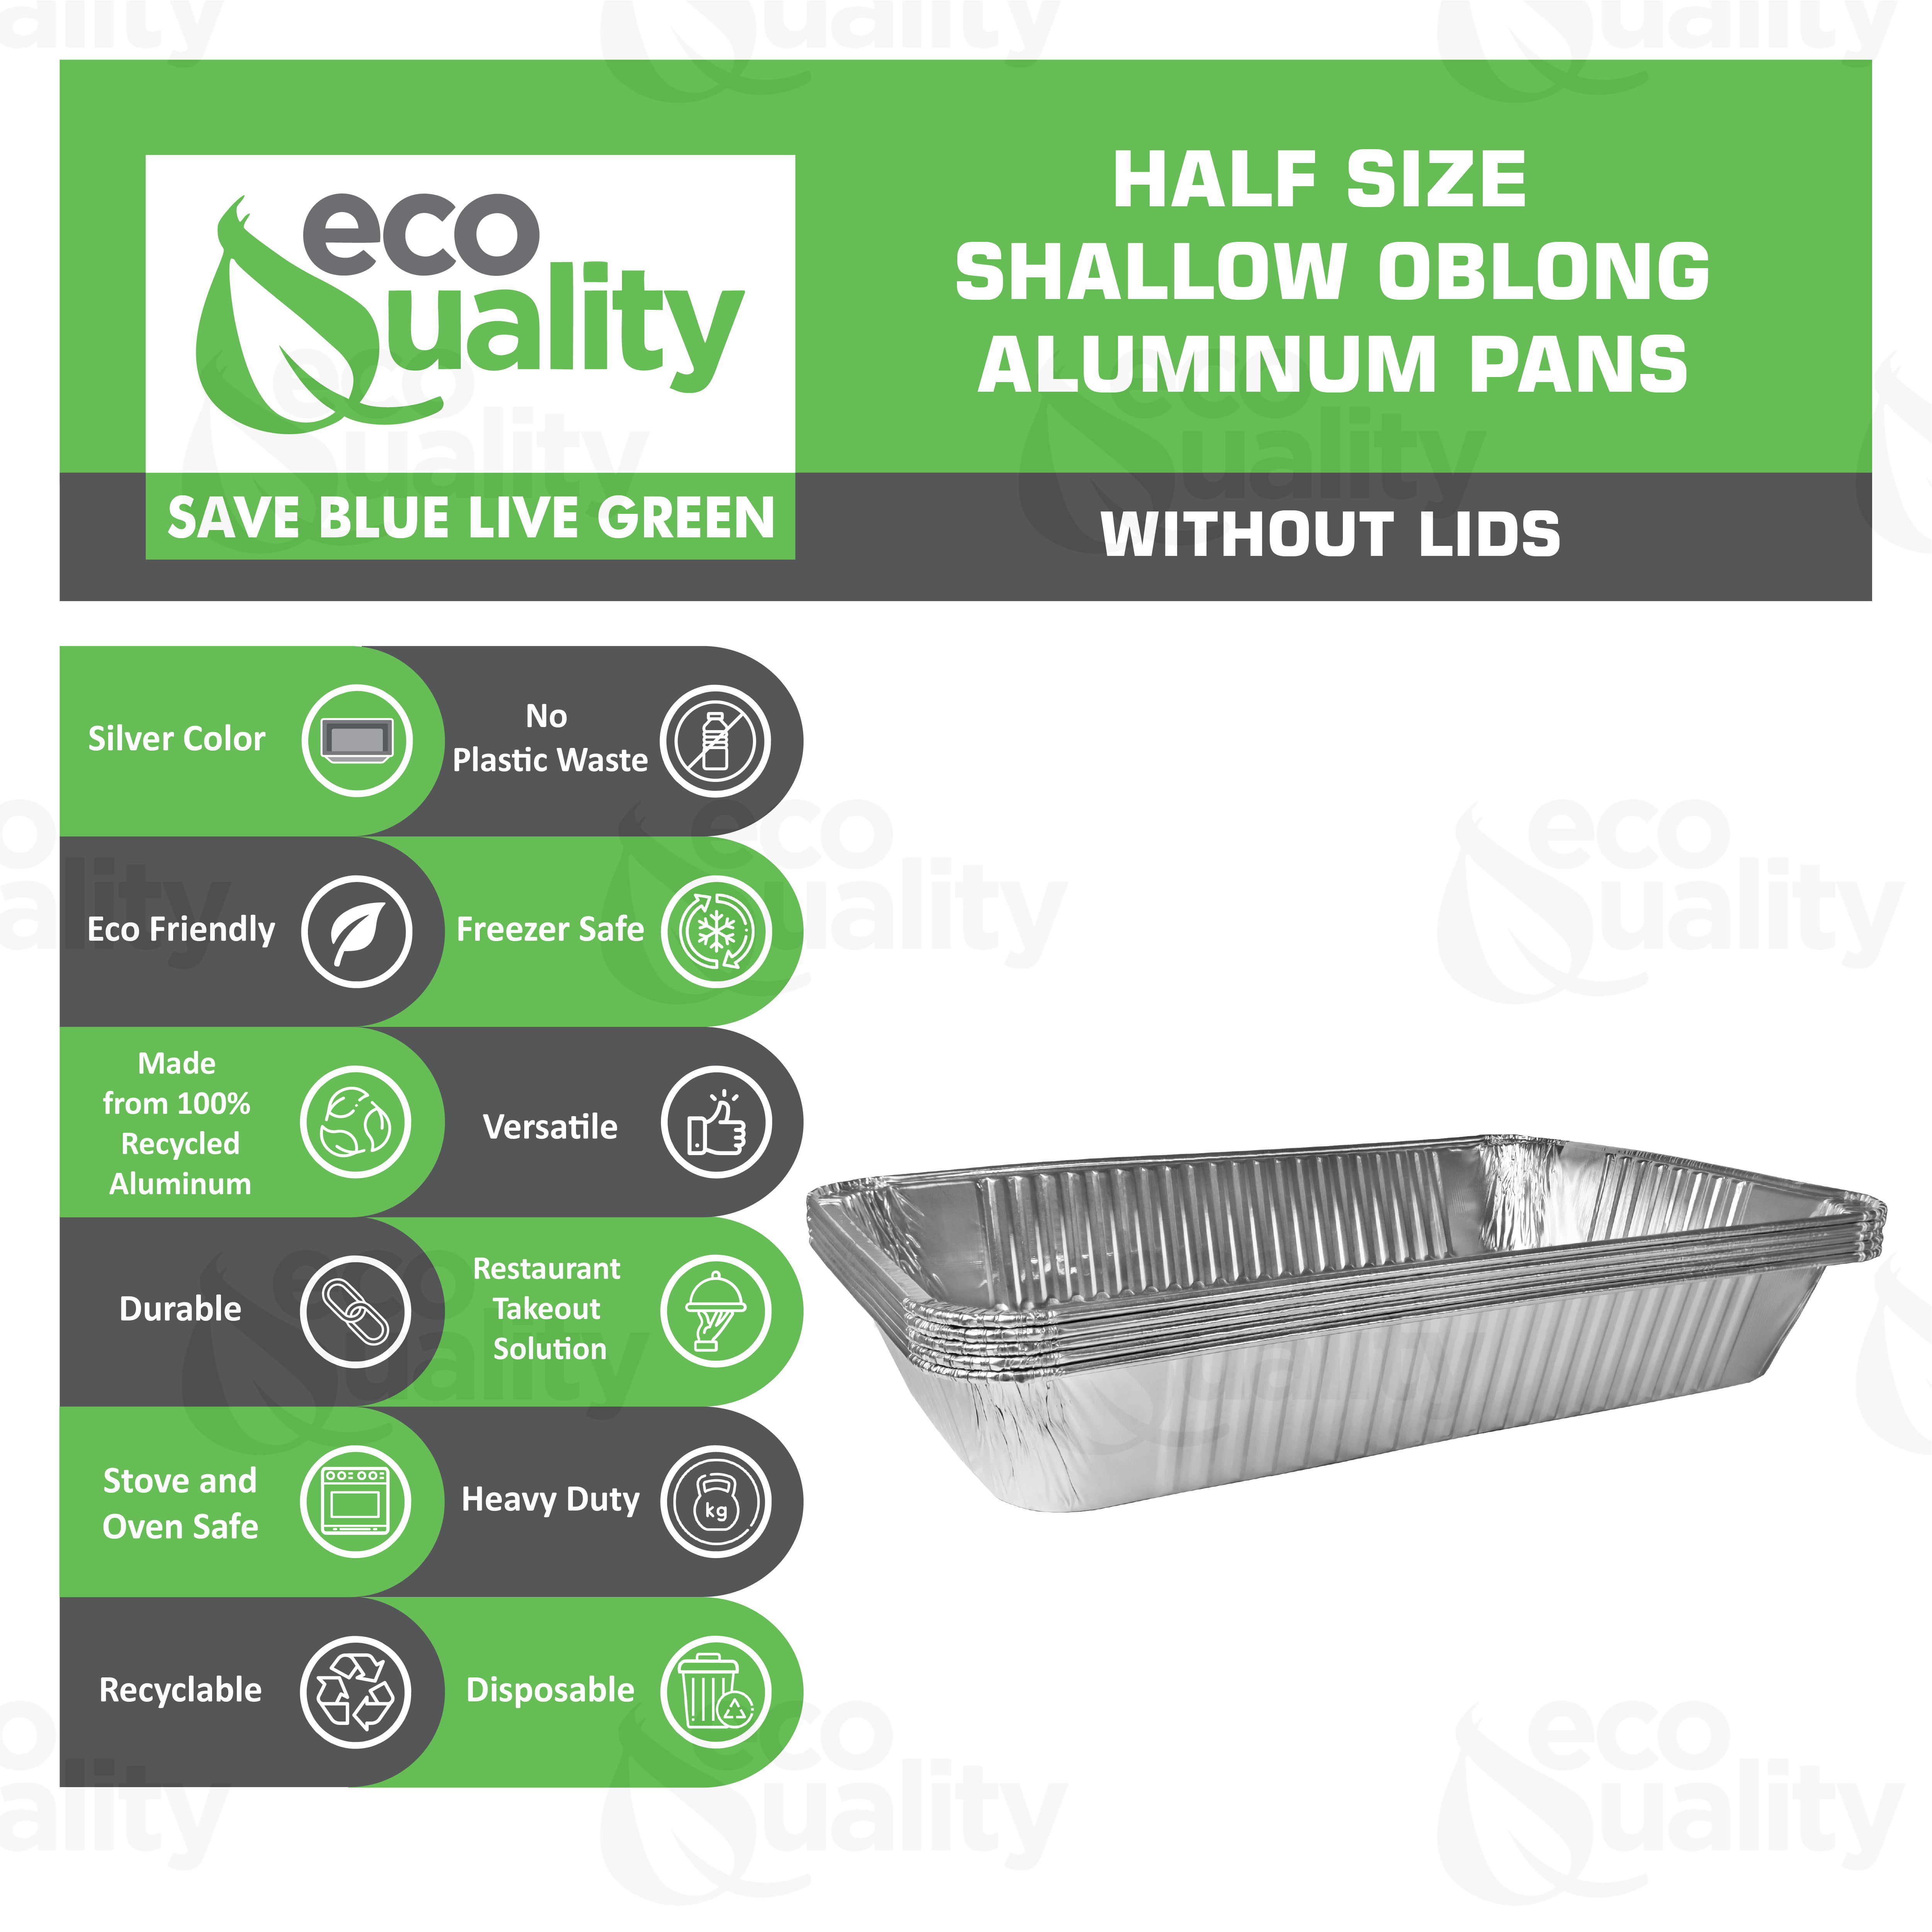 Stock Your Home 9x13 Pans with Lids (10 Pack) - Aluminum Foil Pans wit